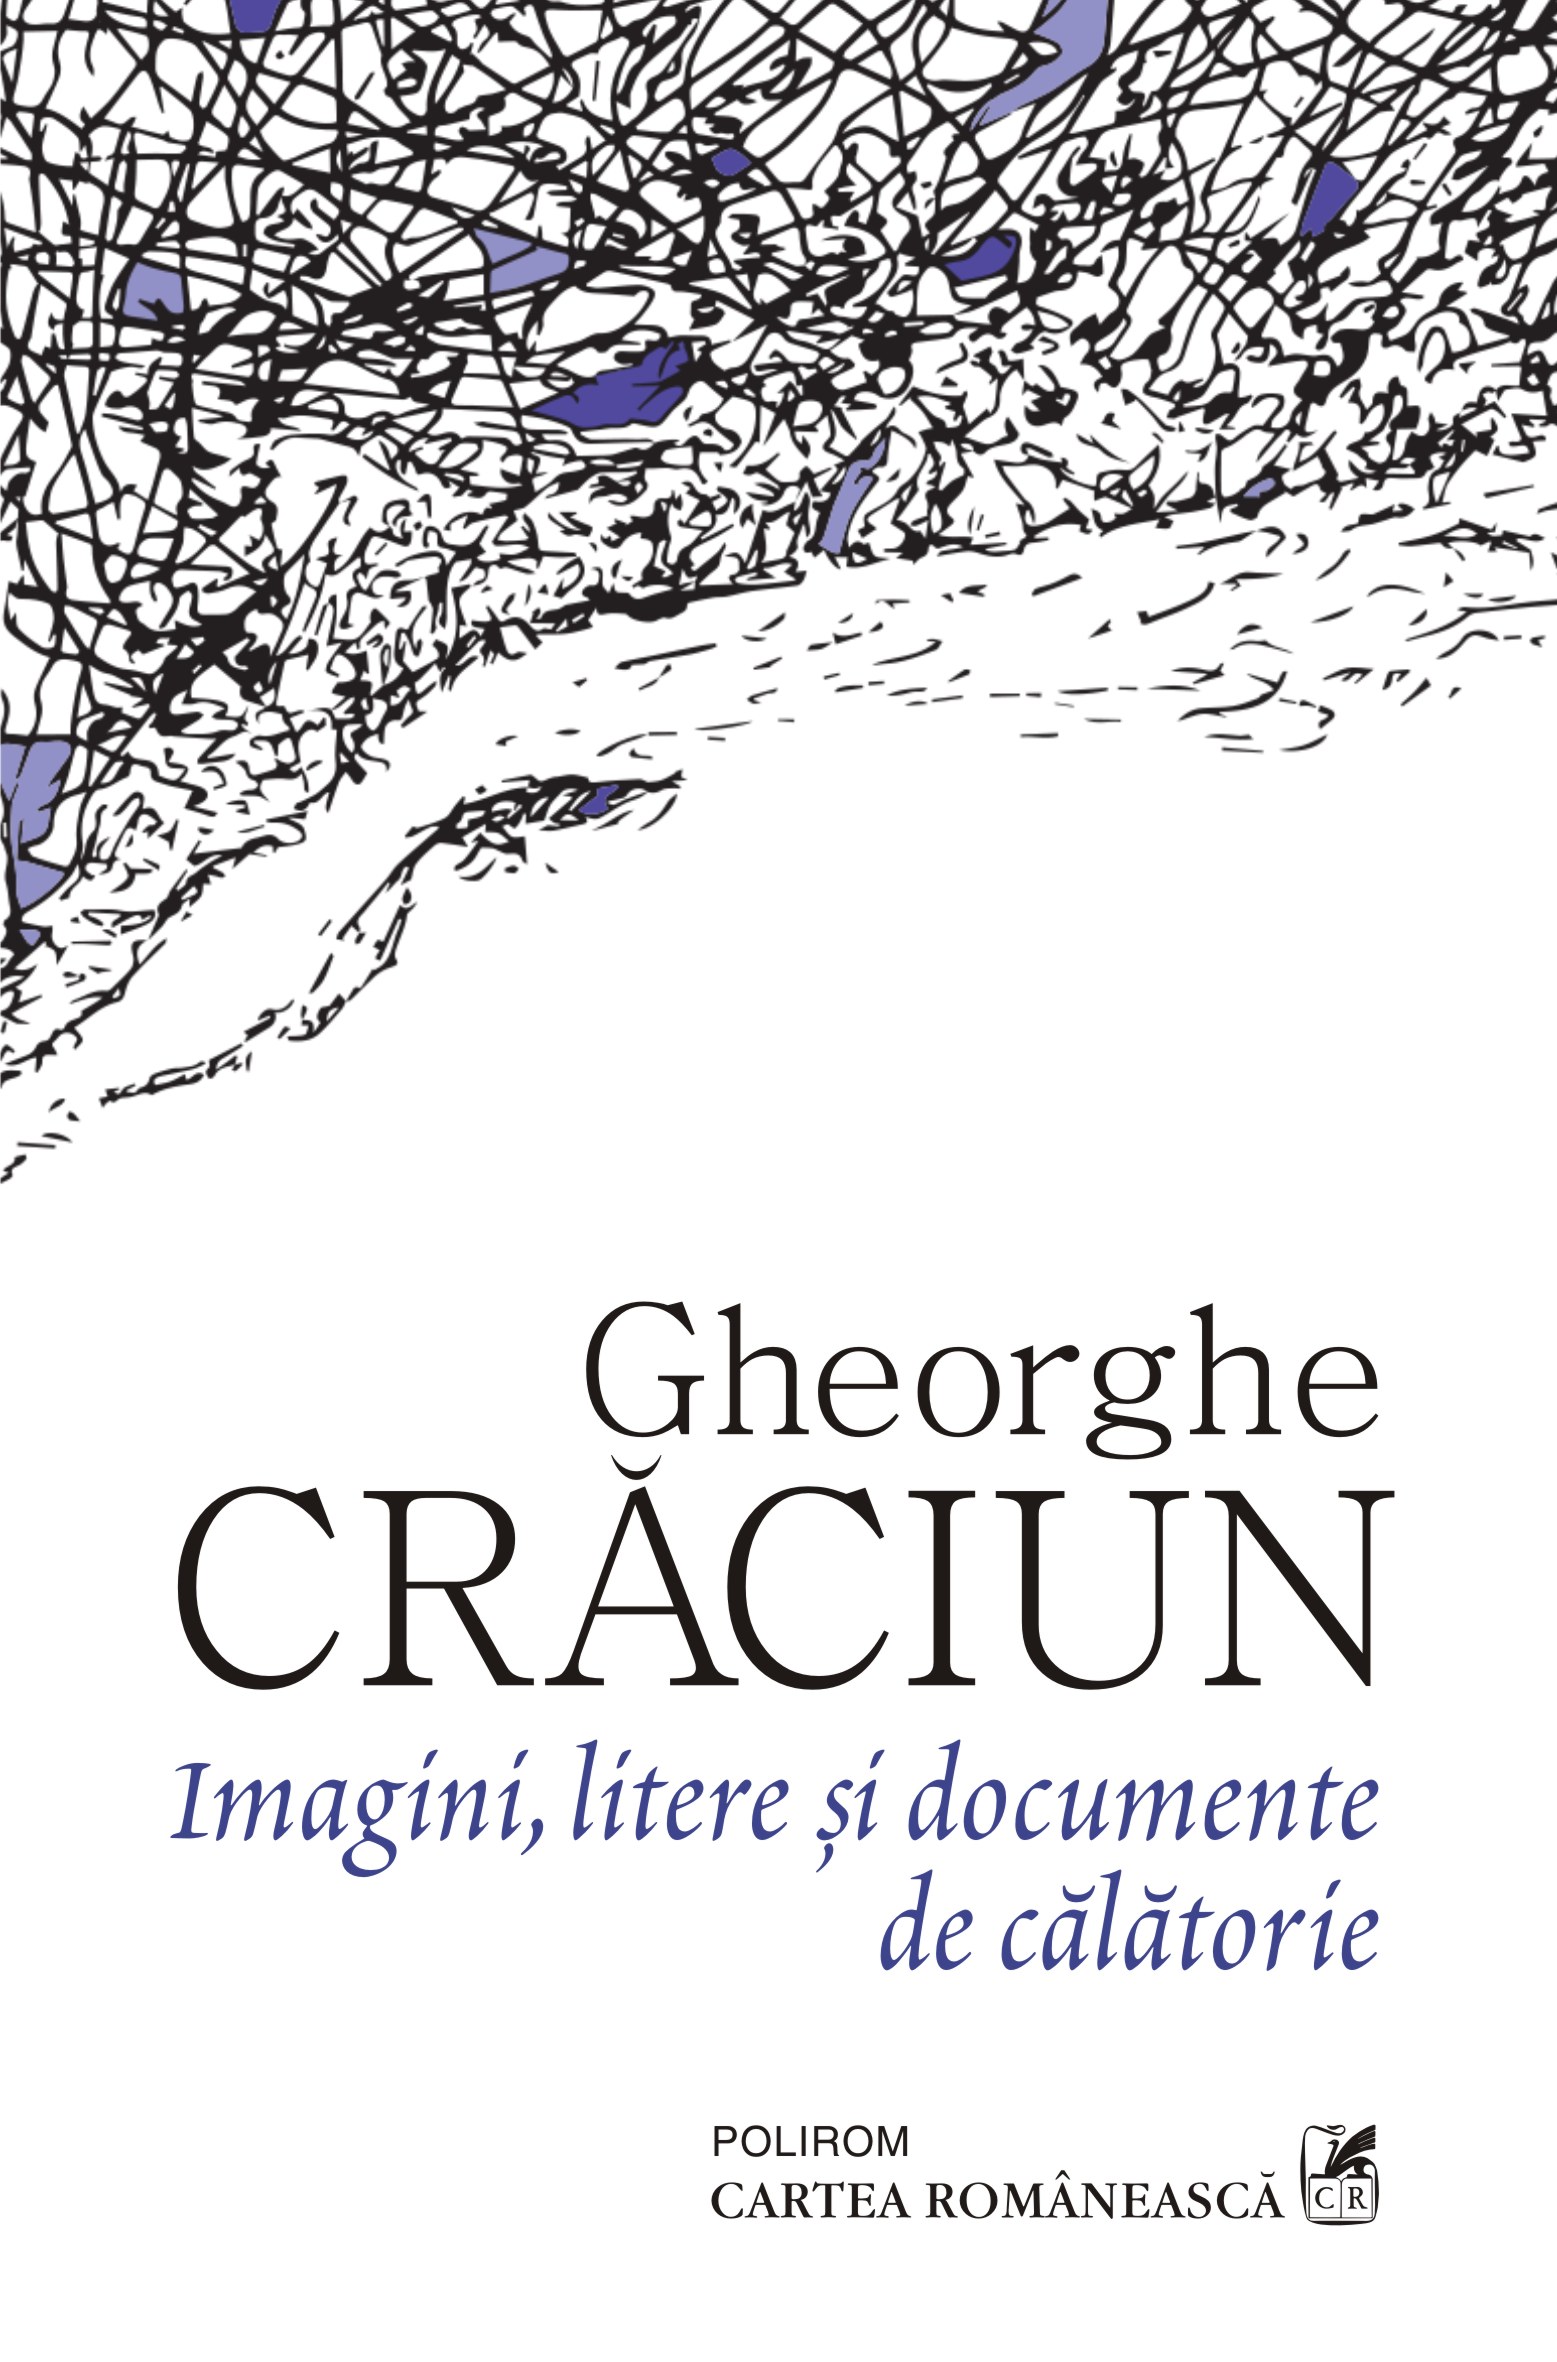 eBook Imagini, litere si documente de calatorie - Gheorghe Craciun